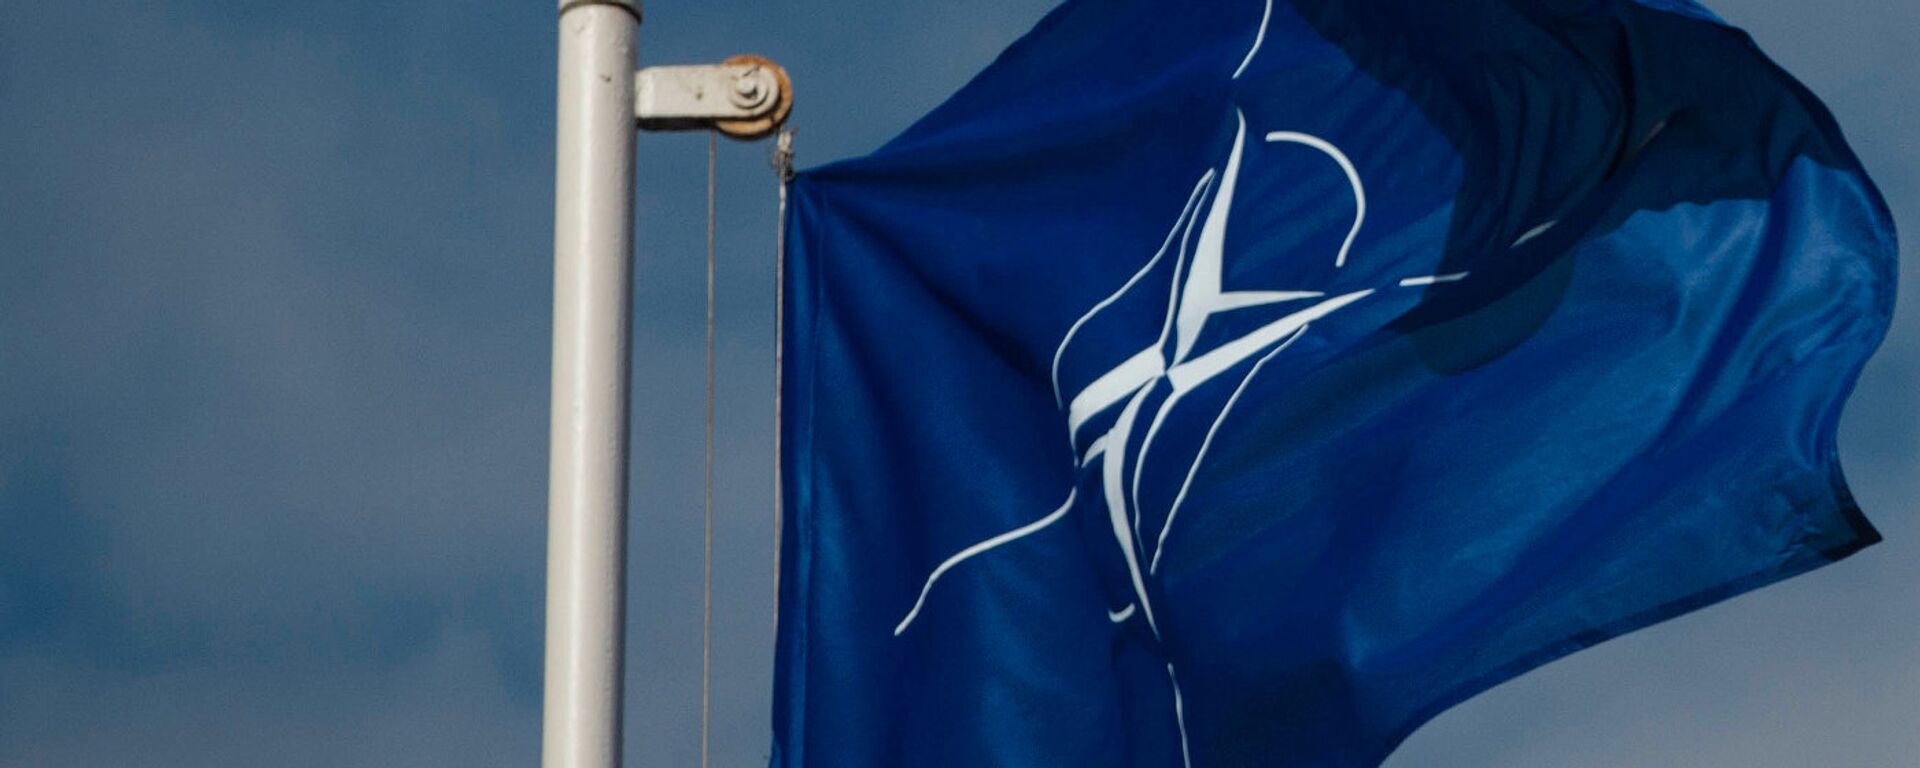 Флаг Организации Североатлантического договора (НАТО) - Sputnik Latvija, 1920, 27.03.2017